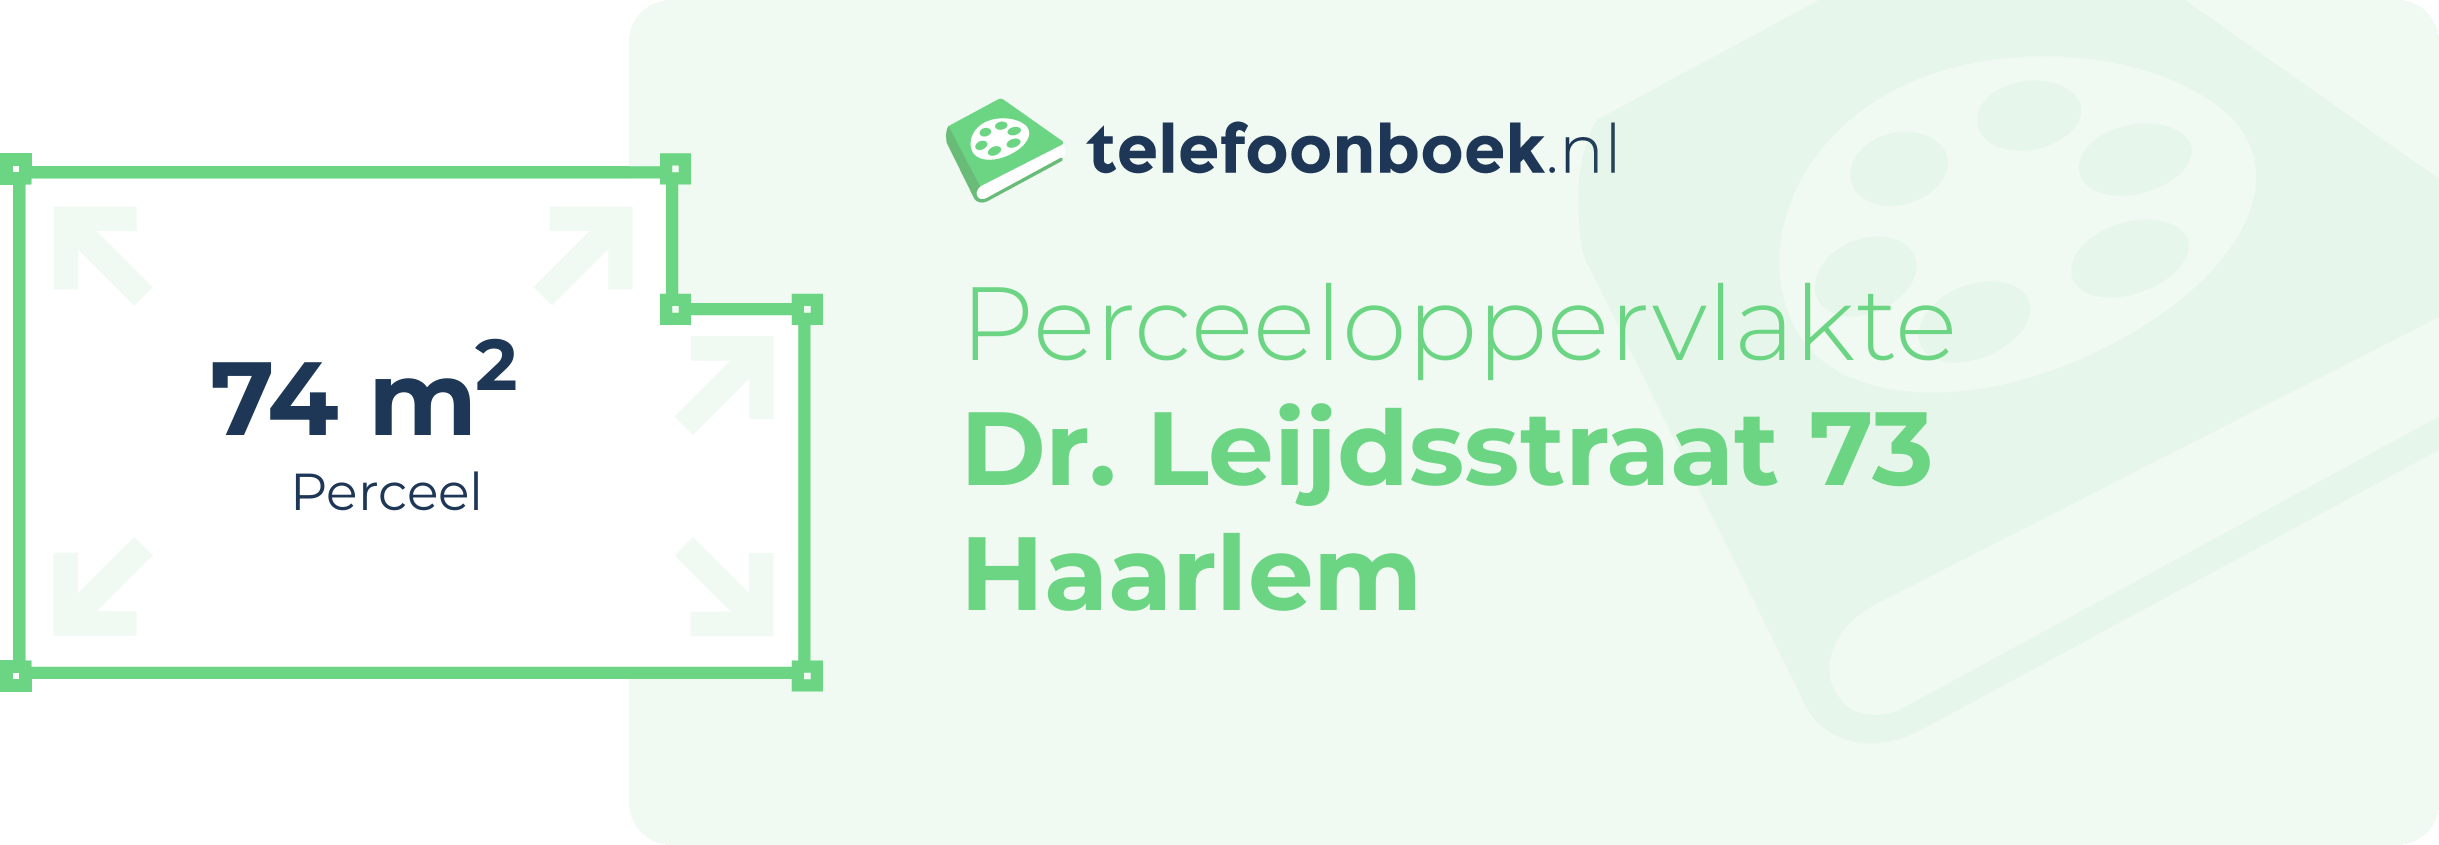 Perceeloppervlakte Dr. Leijdsstraat 73 Haarlem